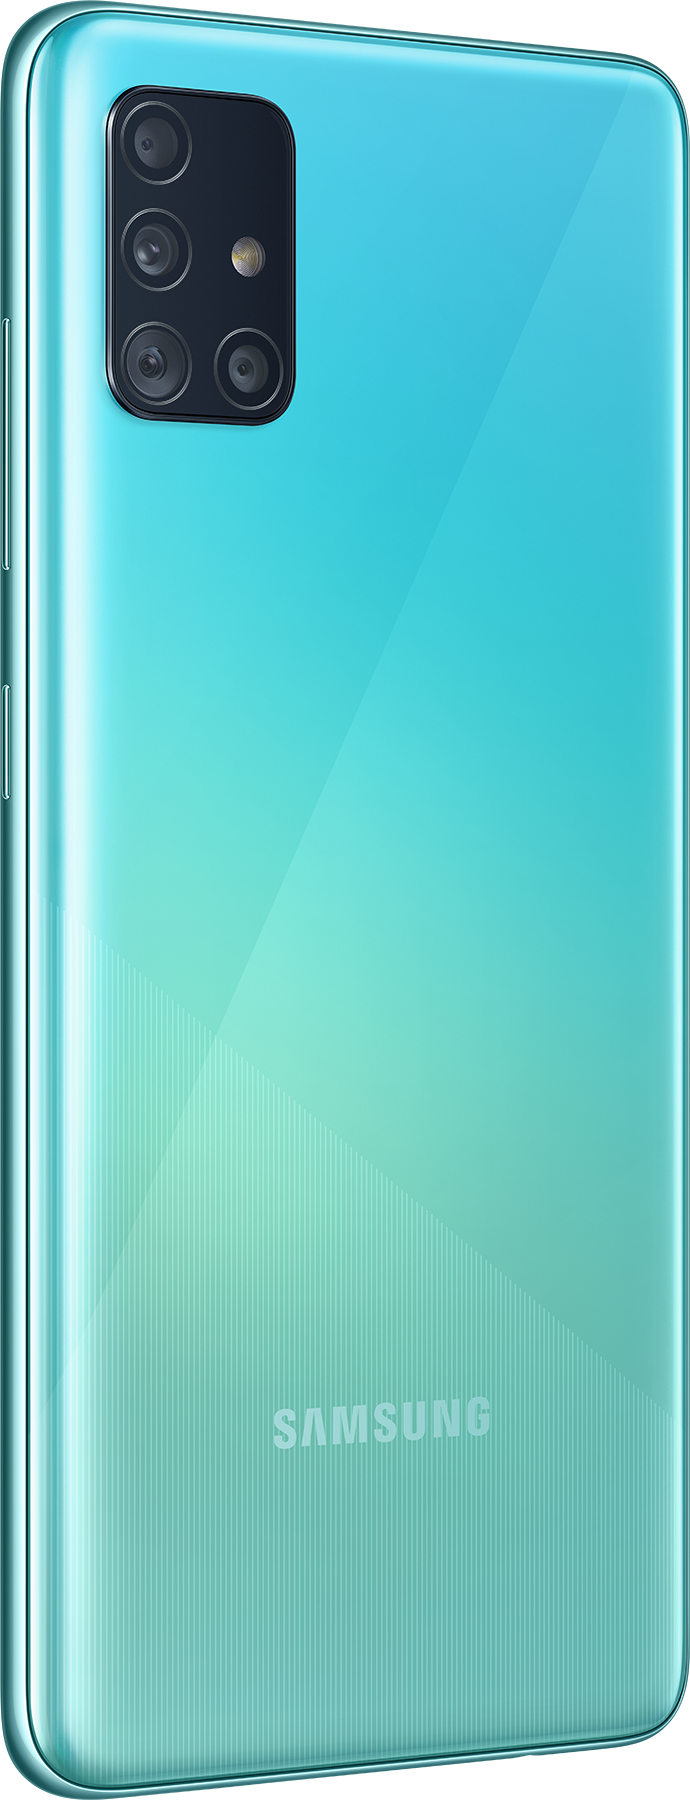 Samsung Galaxy A51 SM-A515F 64GB